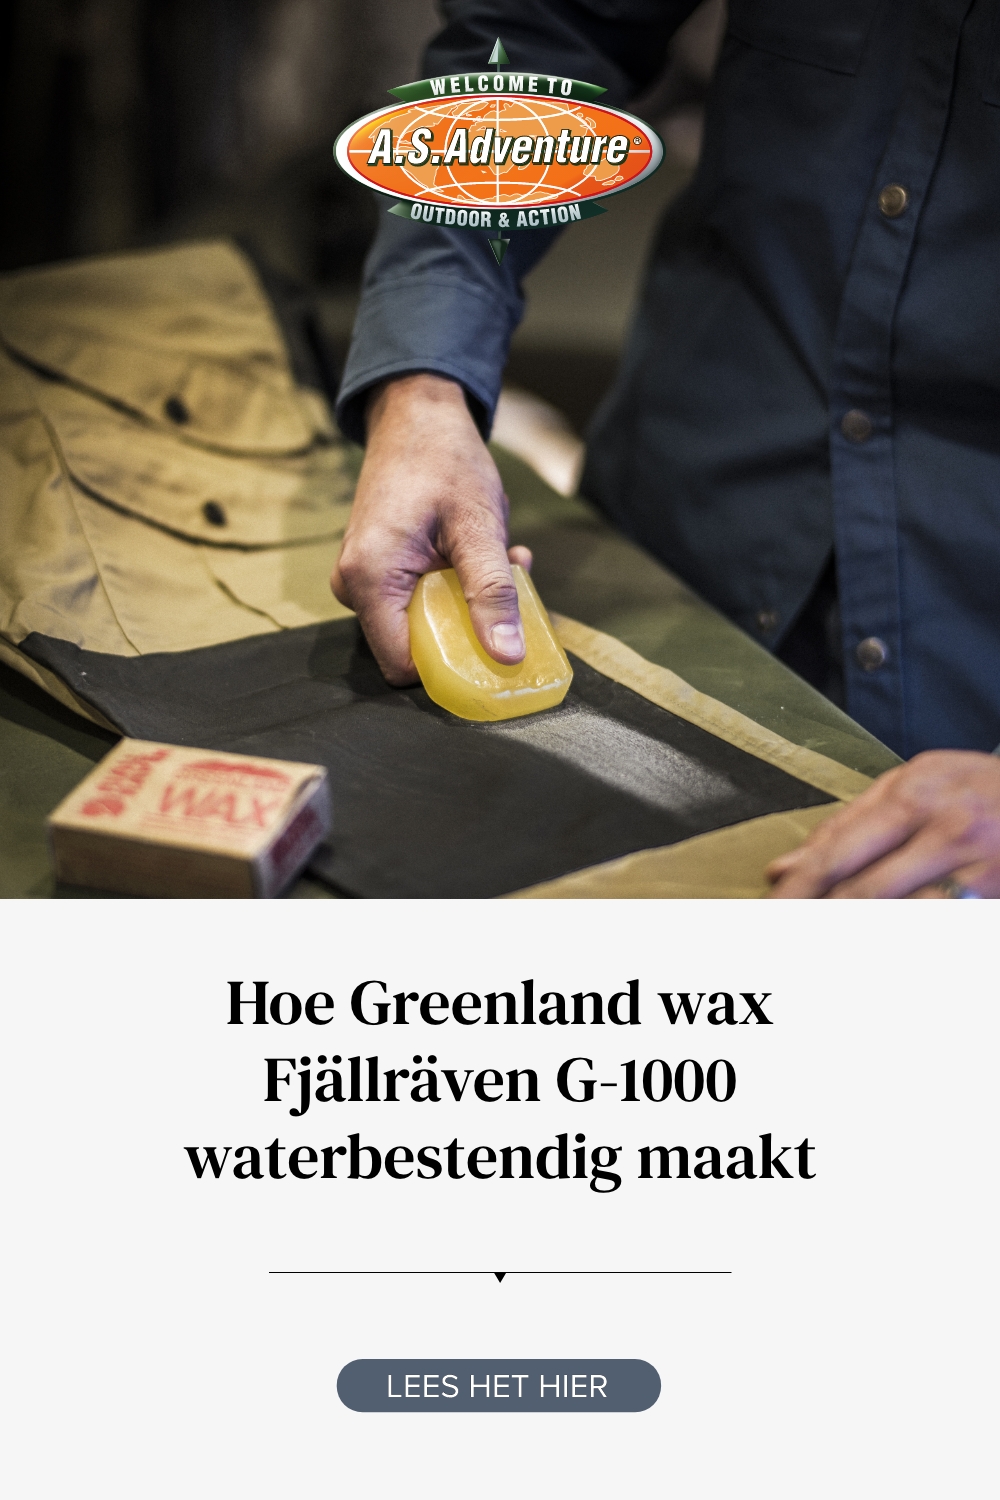 Greenland Wax Fjällräven